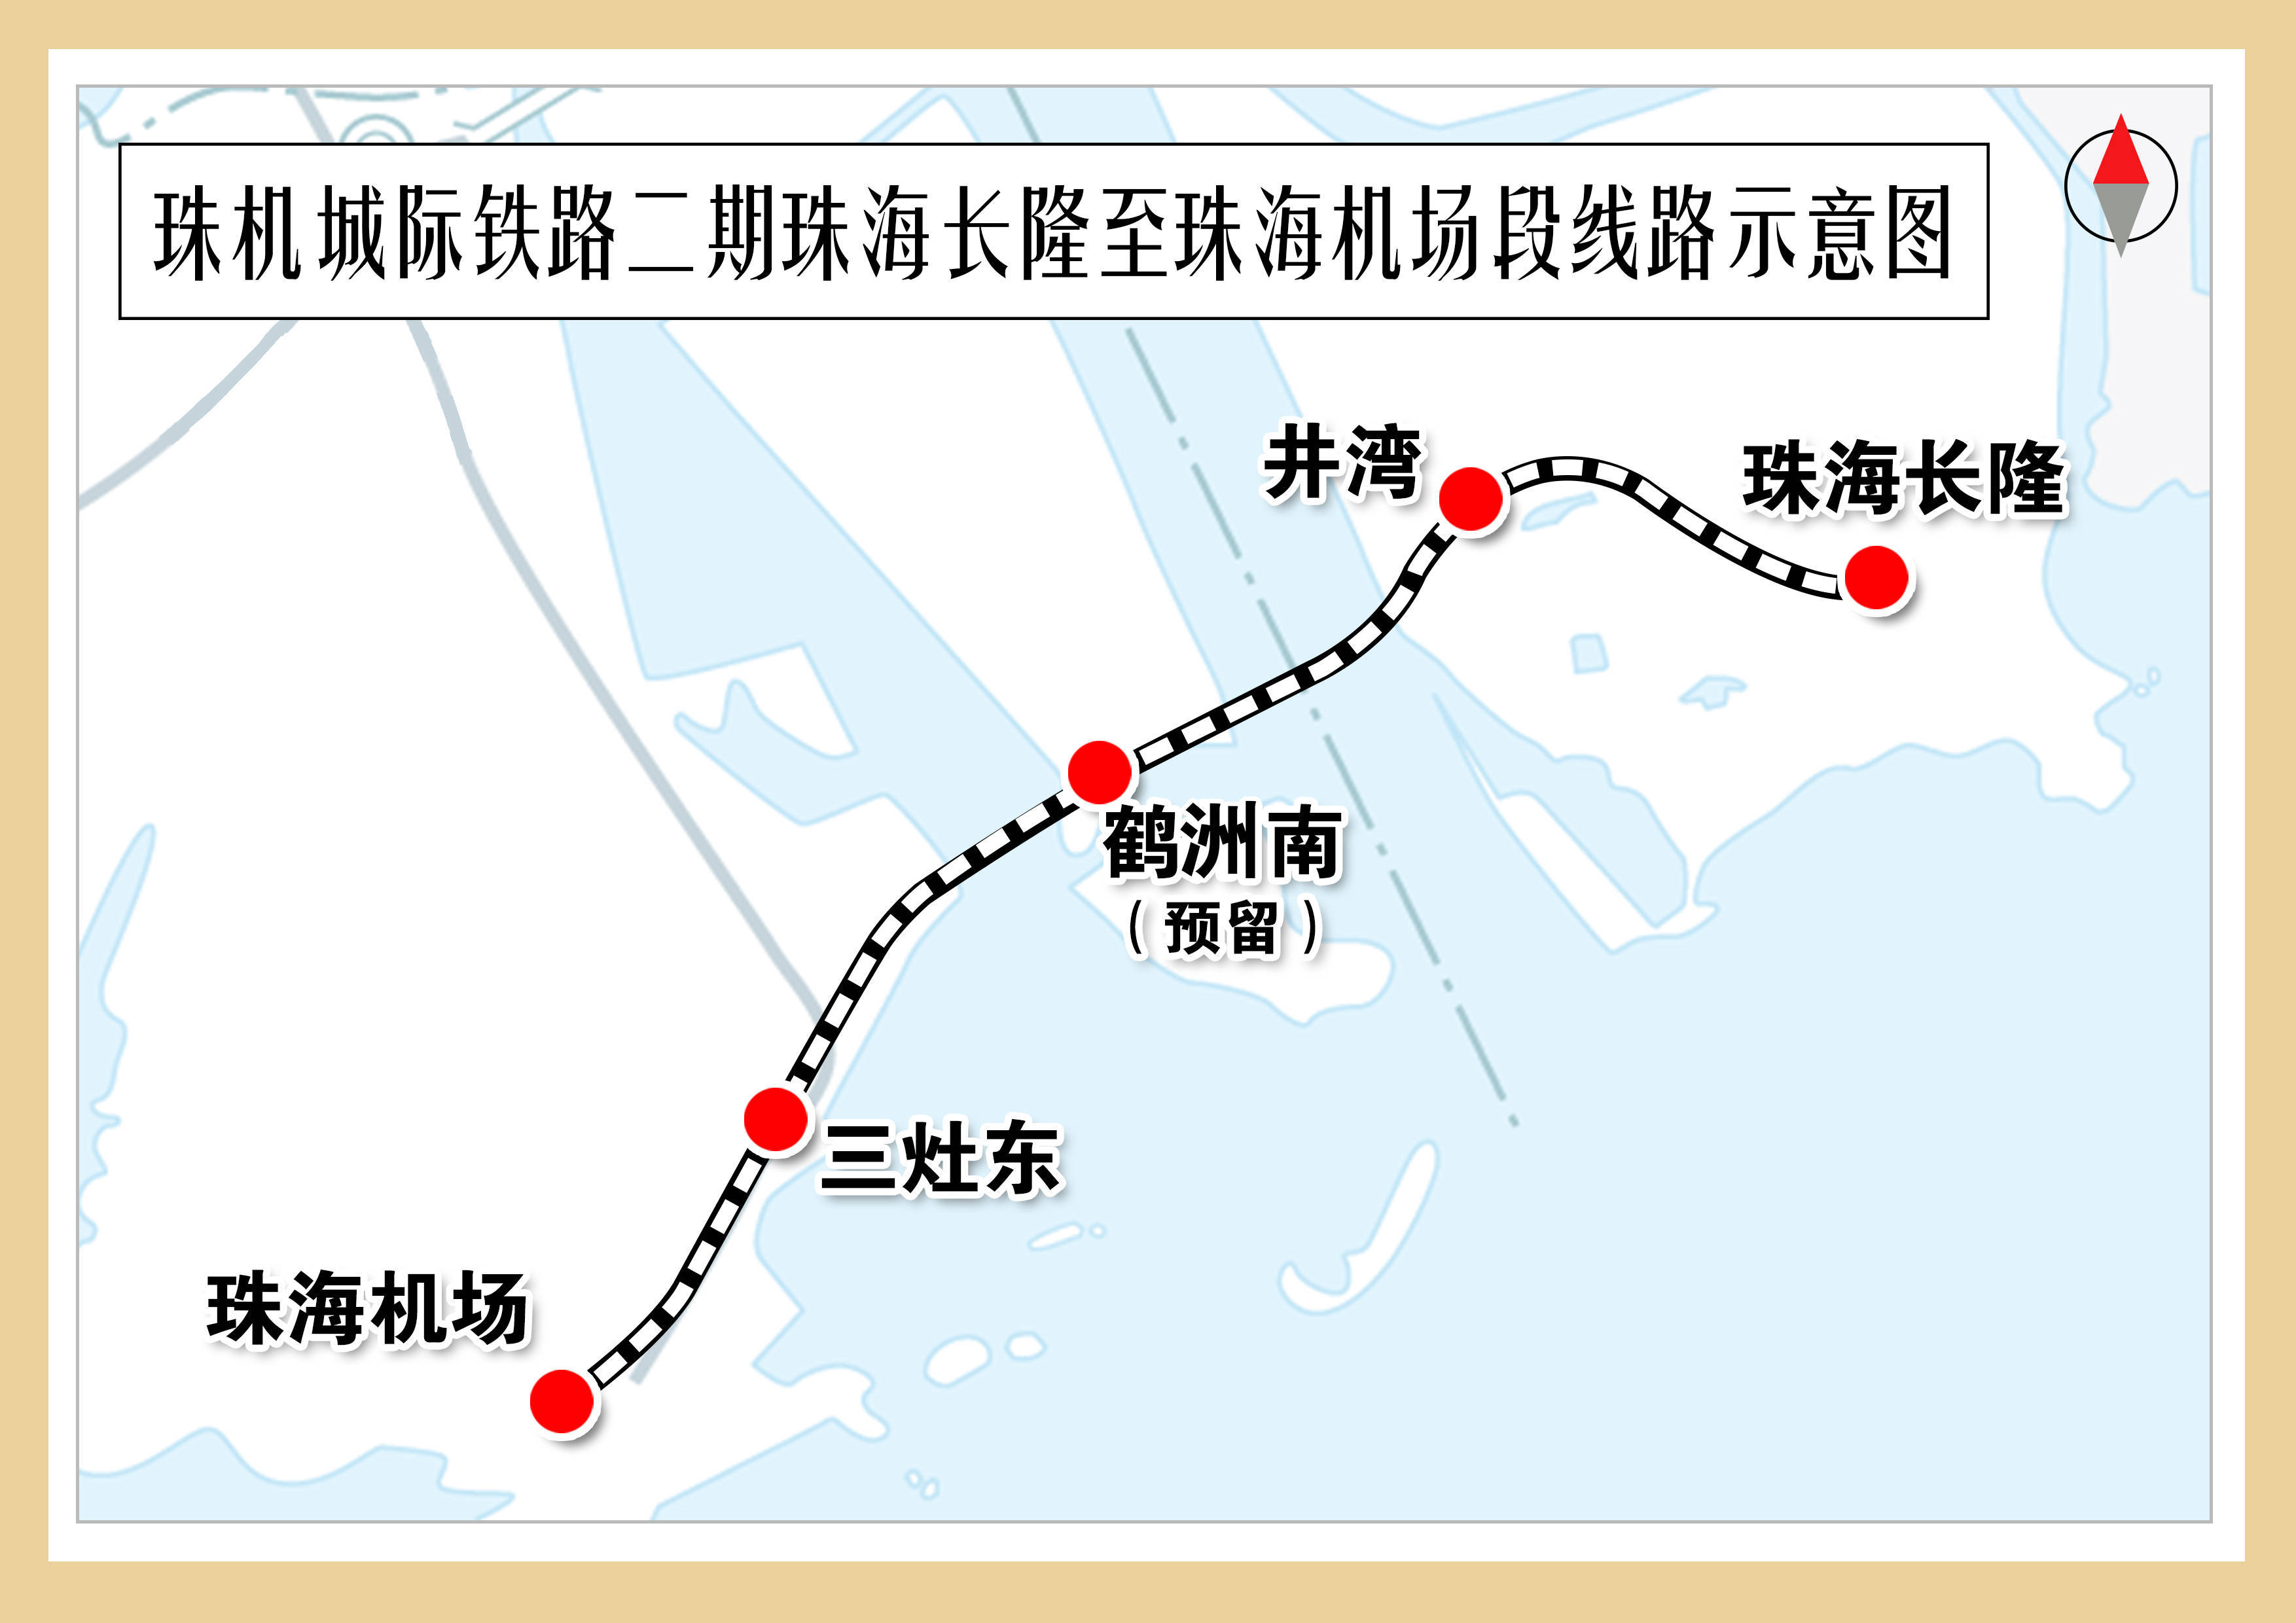 珠机城际铁路二期开通运营,广州南至珠海机场最快113分钟